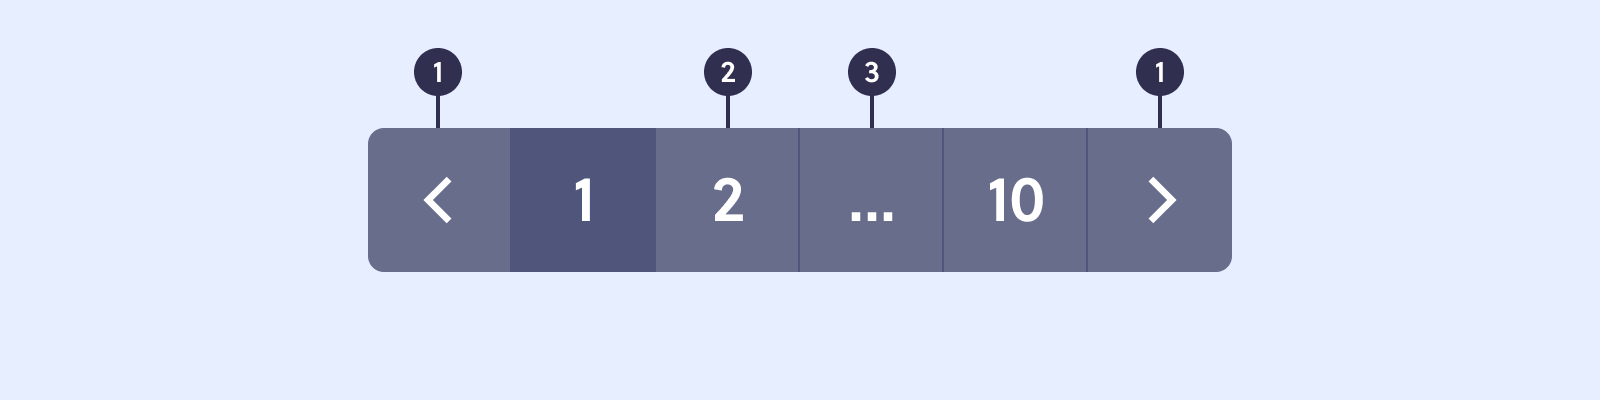 Ilustração de componente de paginação. O primeiro e último links tem ícones de
seta, e marcador de número 1. O segundo e terceiro link tem o número da página e
um marcador de número 2. O terceiro link tem o símbolo de reticências e destaque
para o marcador 3. 